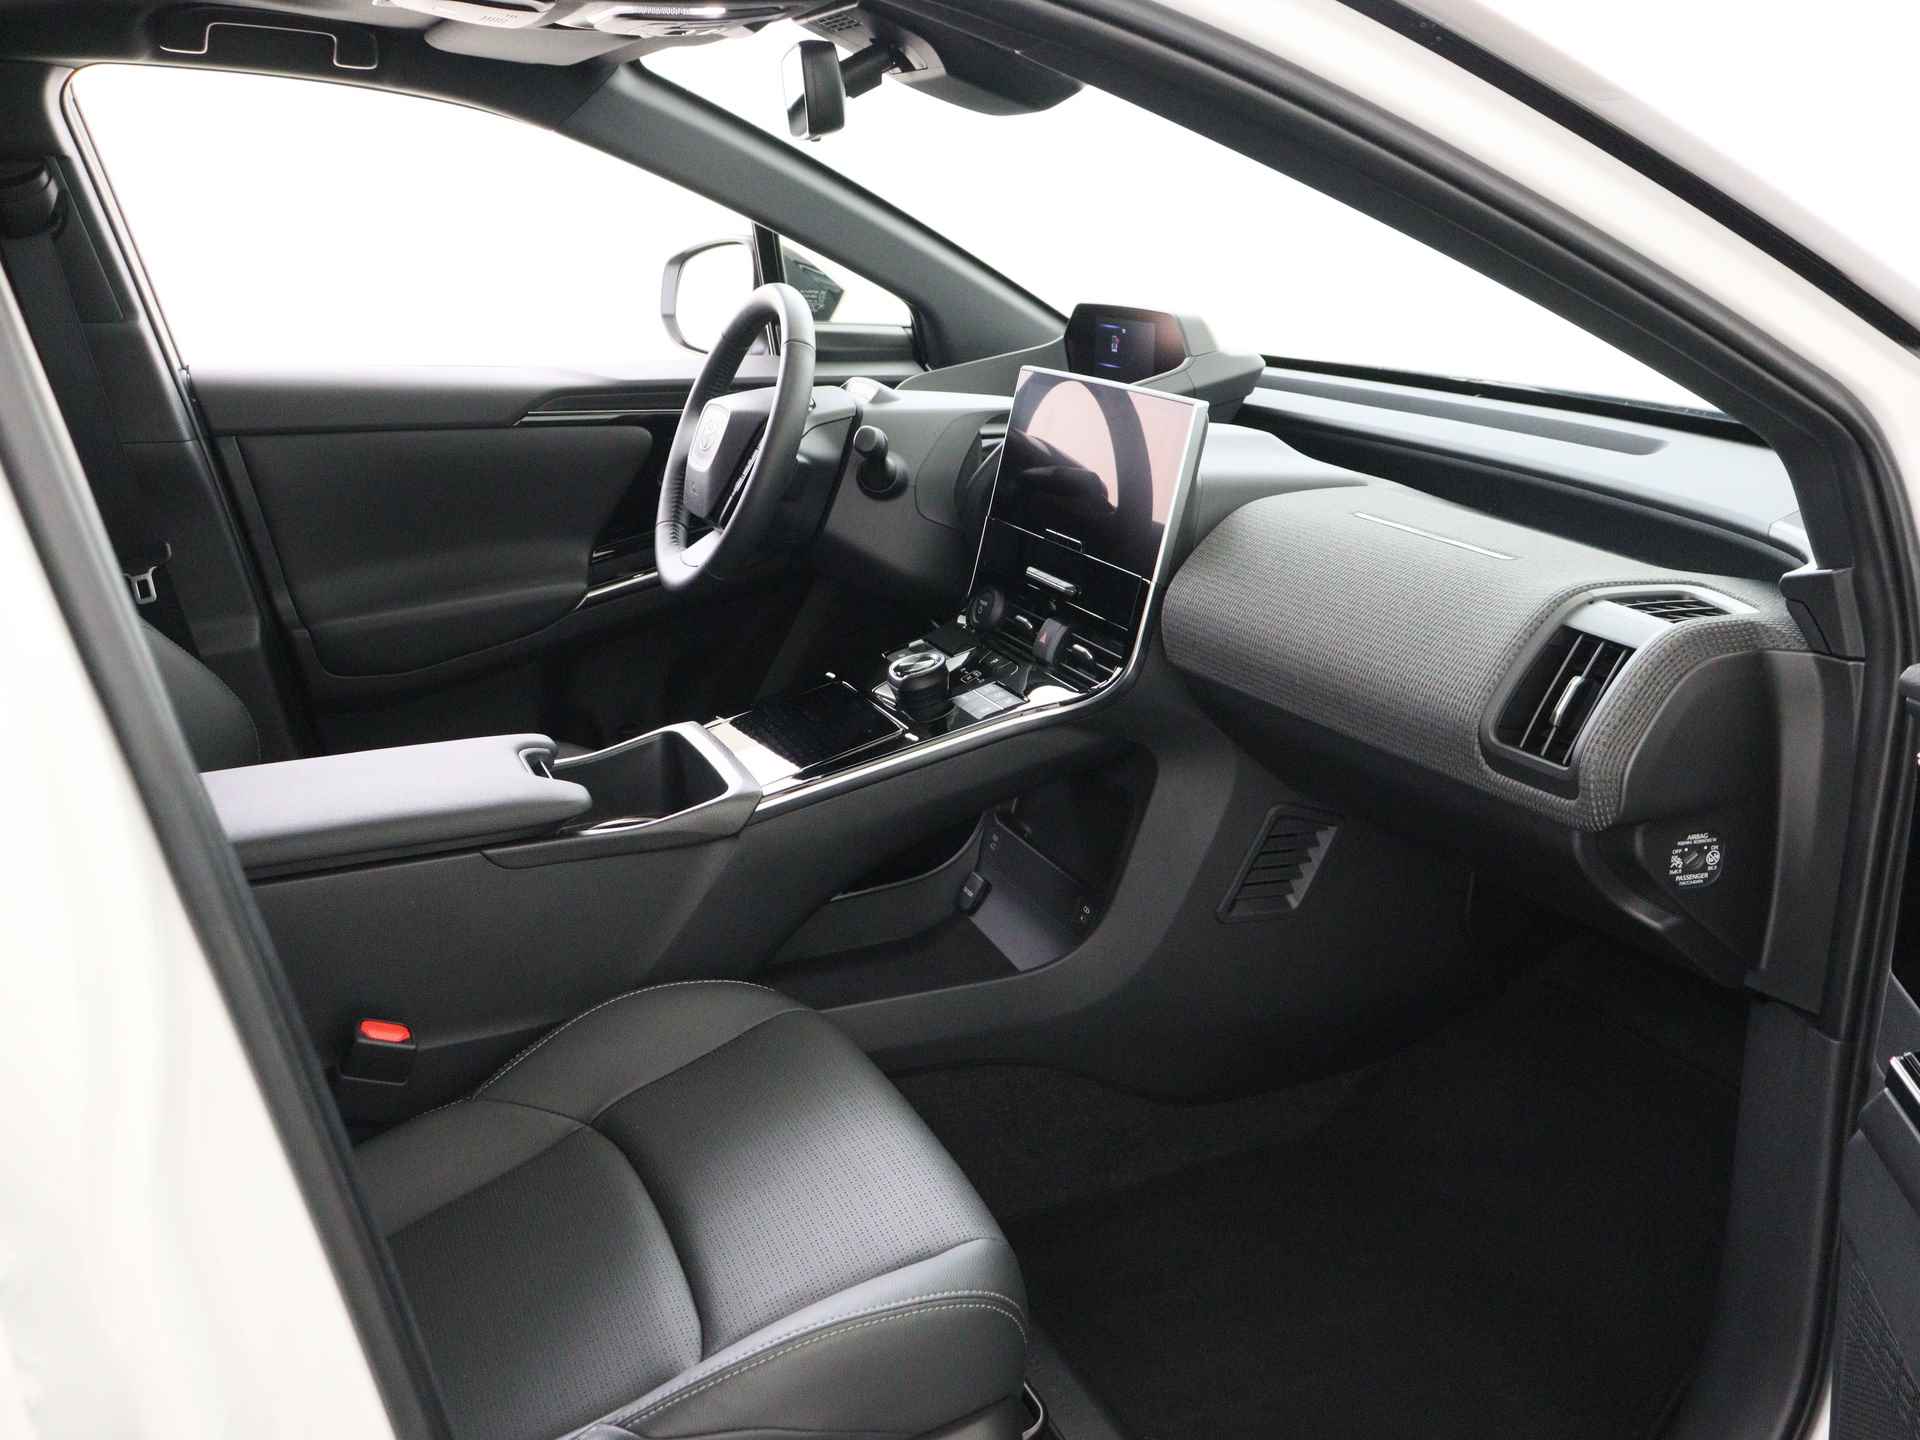 Toyota Bz4x Launch Edition Premium Bi-Tone uitvoering | Navigatie | Stoel&stuur verwarming | My T app | Panoramadak | Wegenbelasting vrij | Subsidie €2000,- aanvraag mogelijk. - 25/48